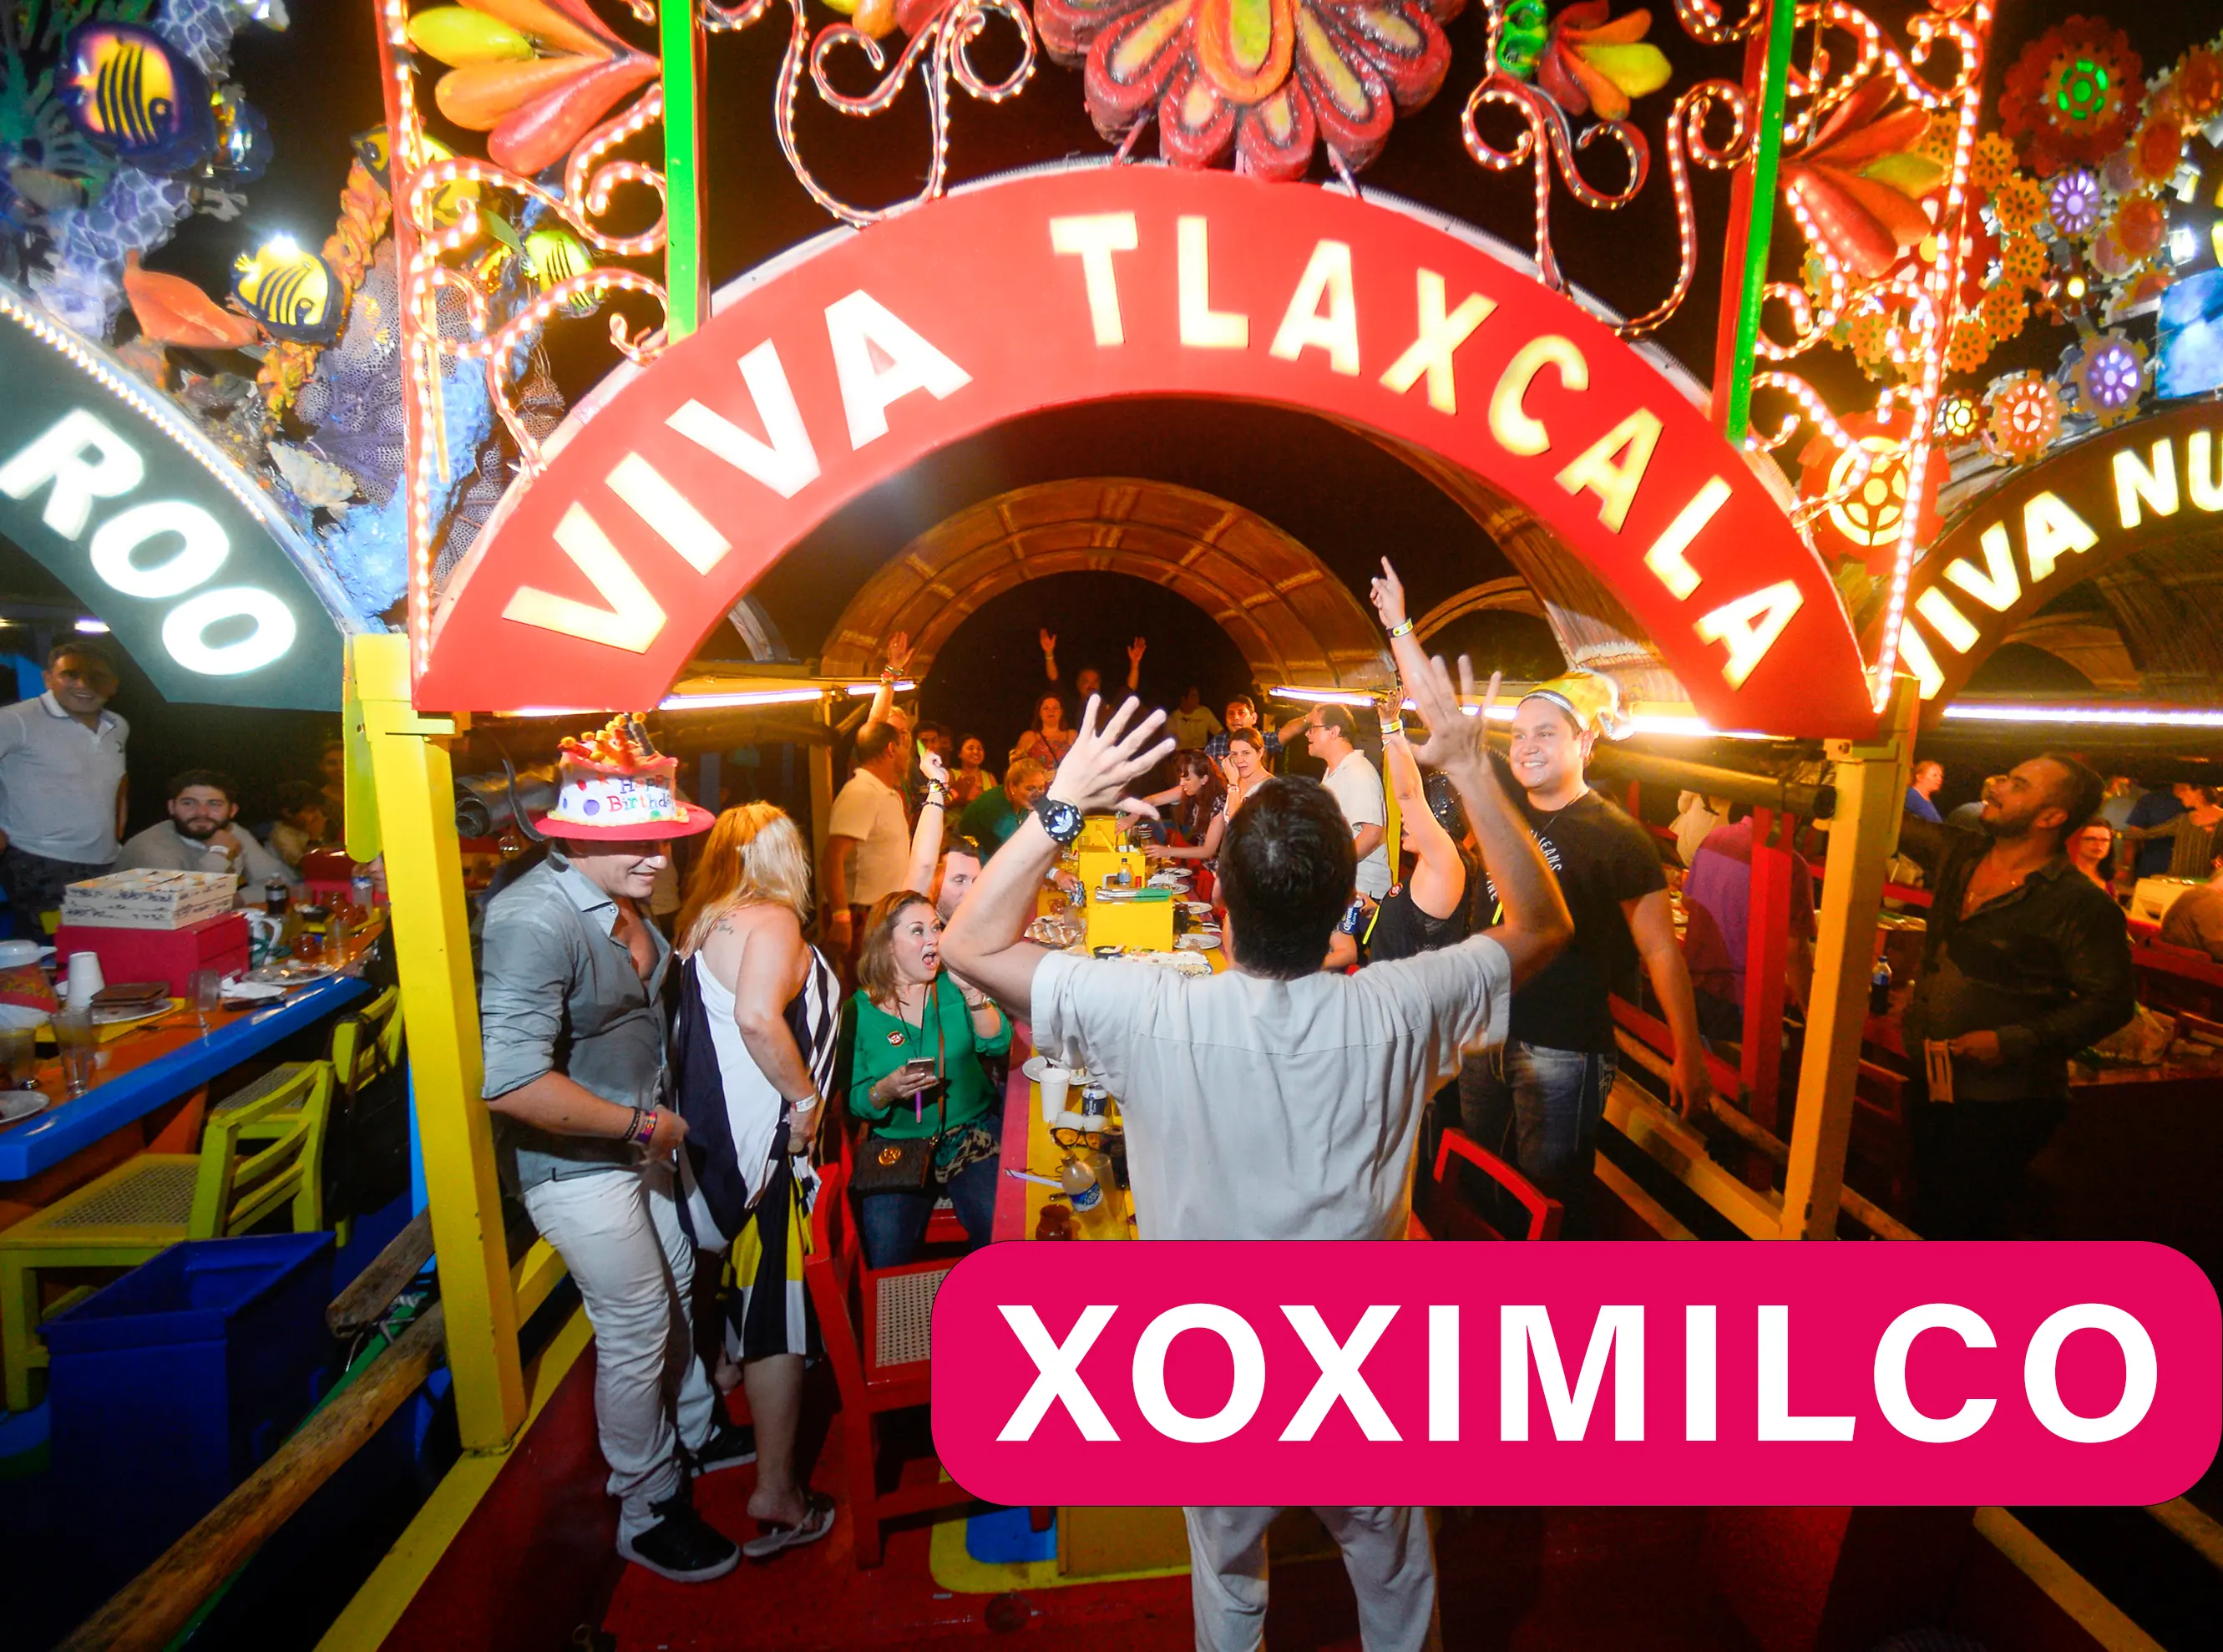 People having fun at Xoximilco enjoying a Mexican party in the Riviera Maya